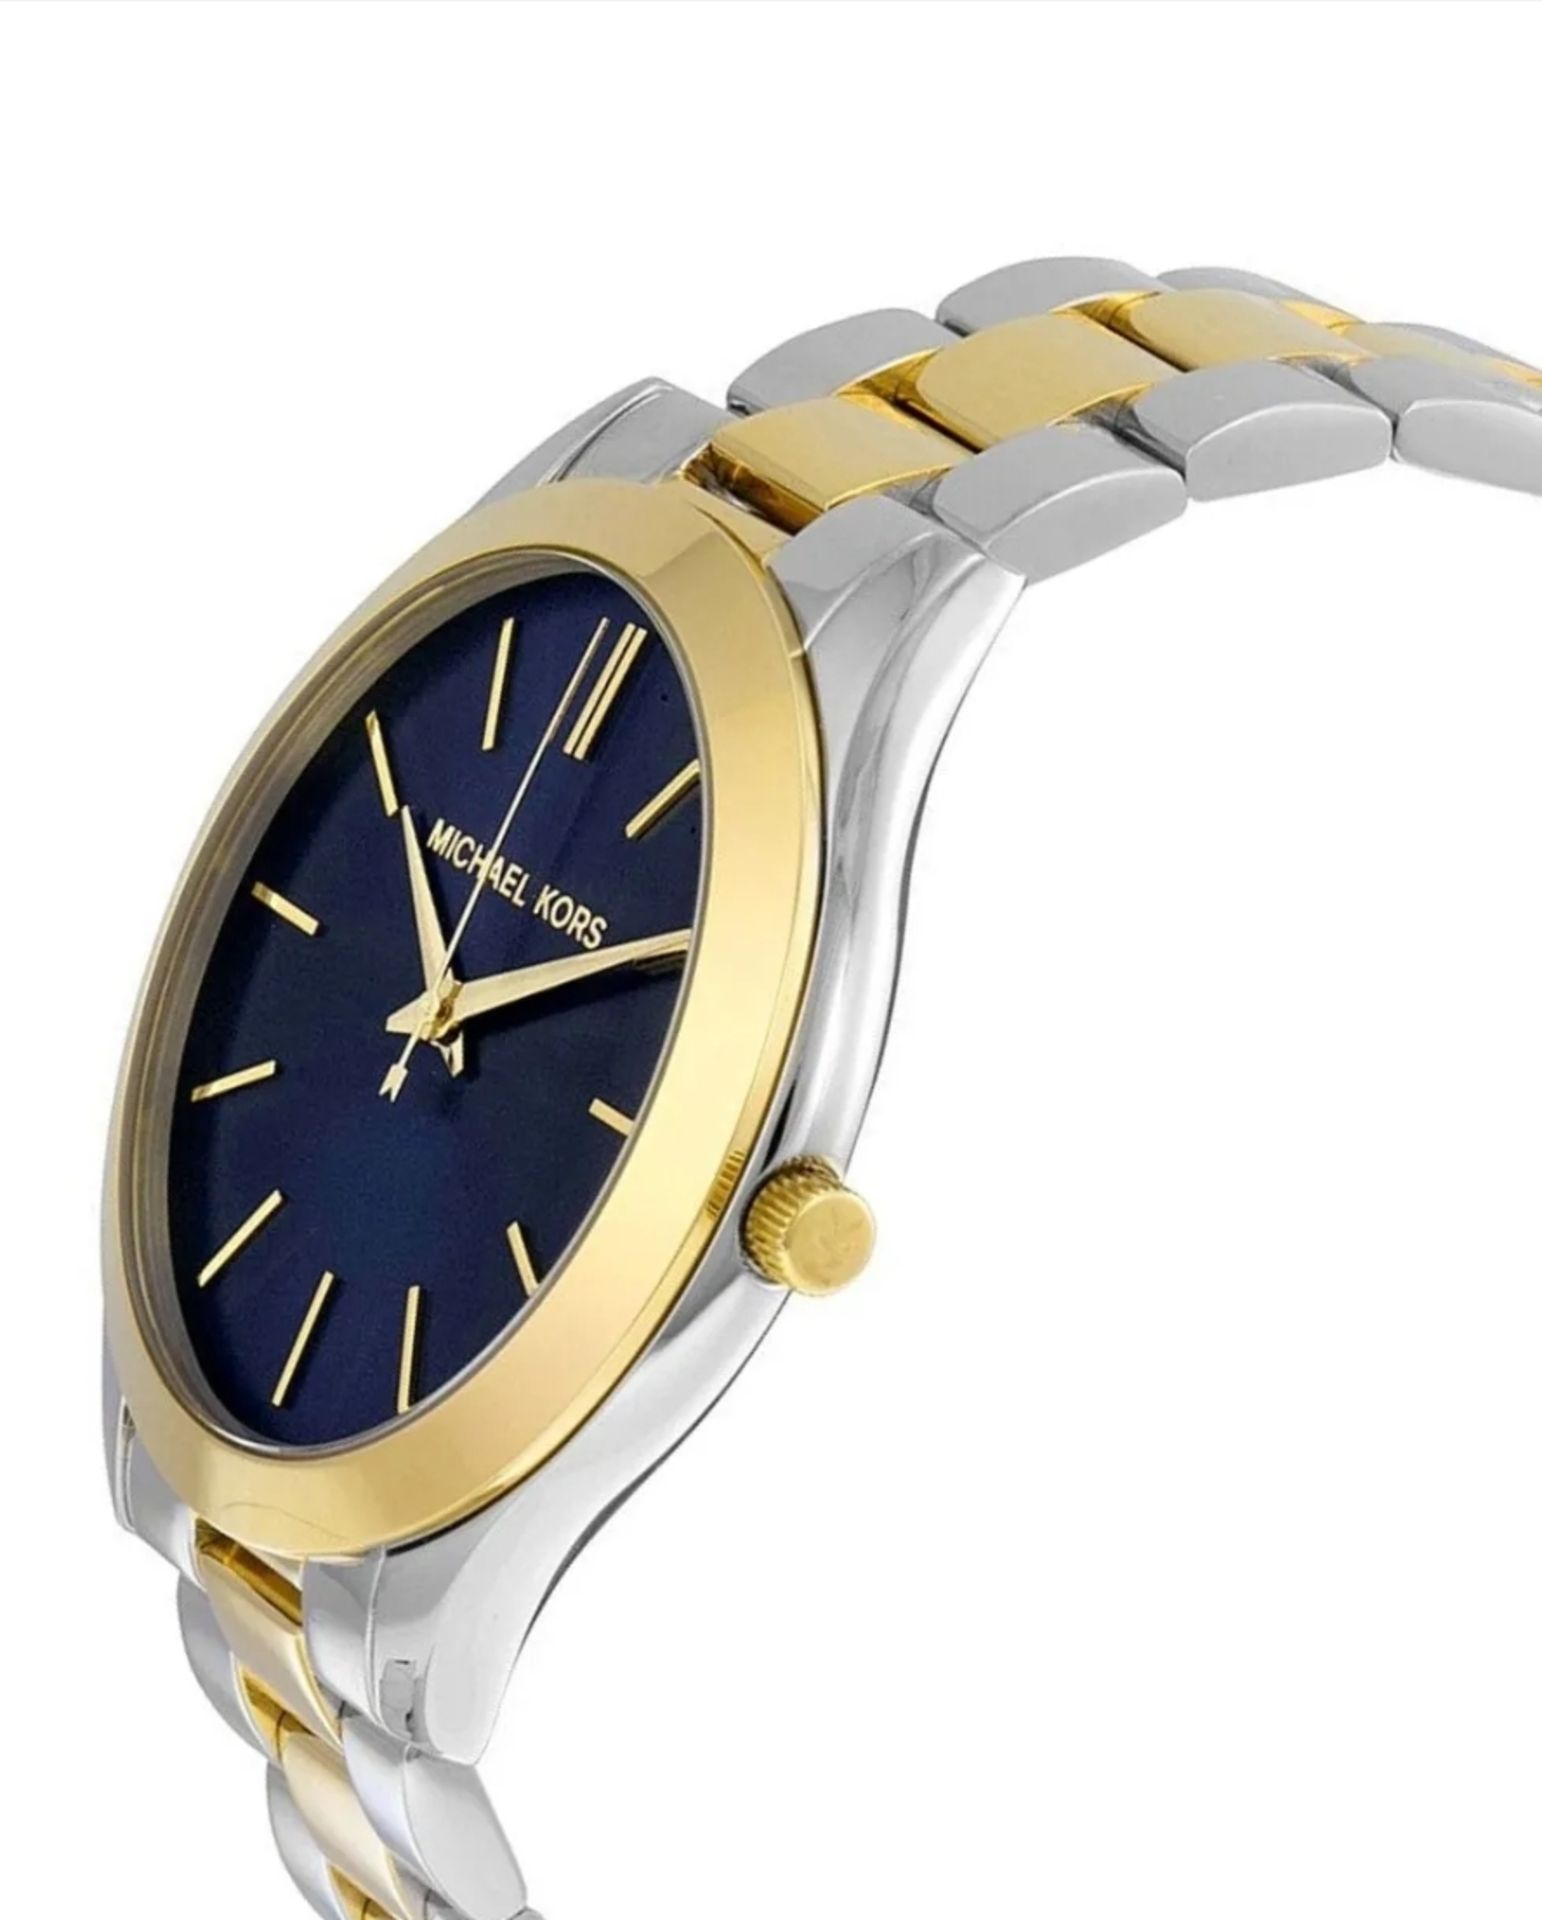 Michael Kors MK3479 Ladies Slim Runway Watch Two Tone Stainless Steel Blue Dial Quartz Watch - Image 2 of 7